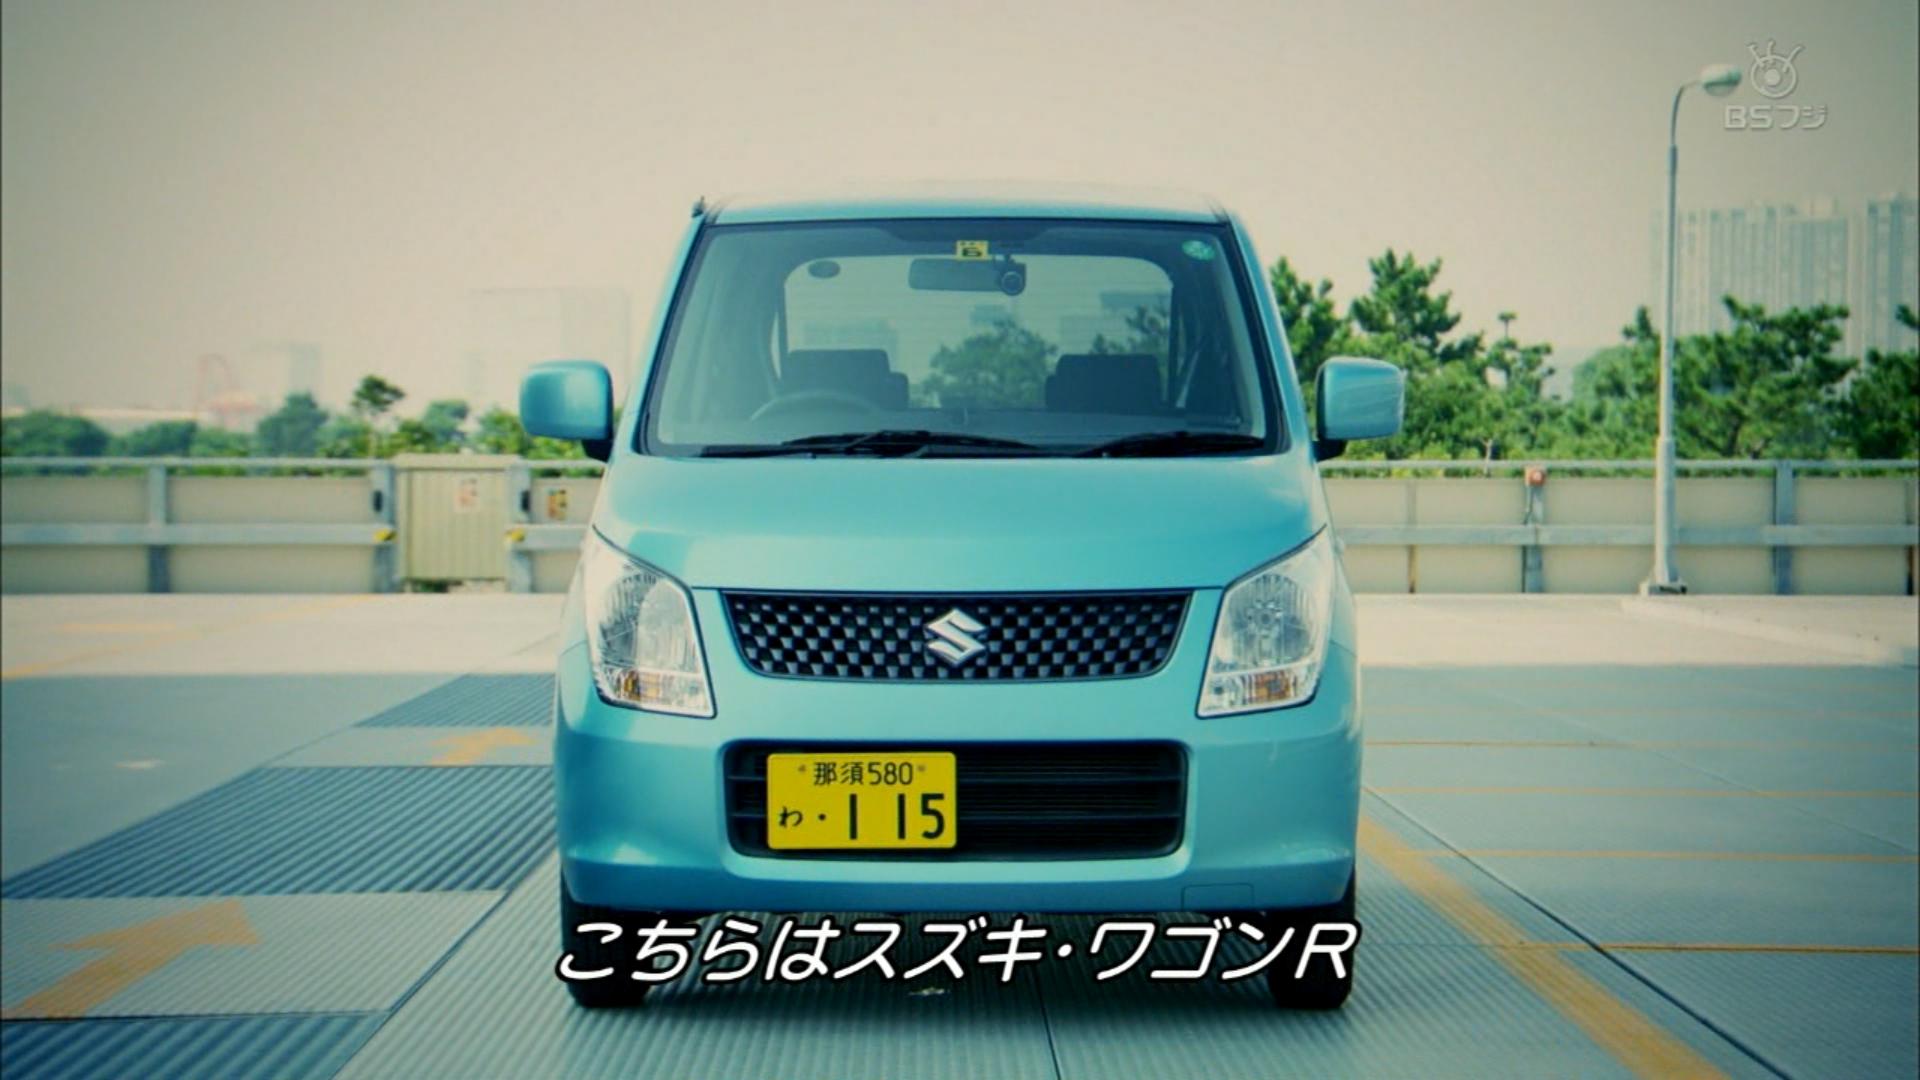 Hidaka トップ ギア で日本の軽自動車を紹介 Http T Co Lutq48uwh4 Twitter